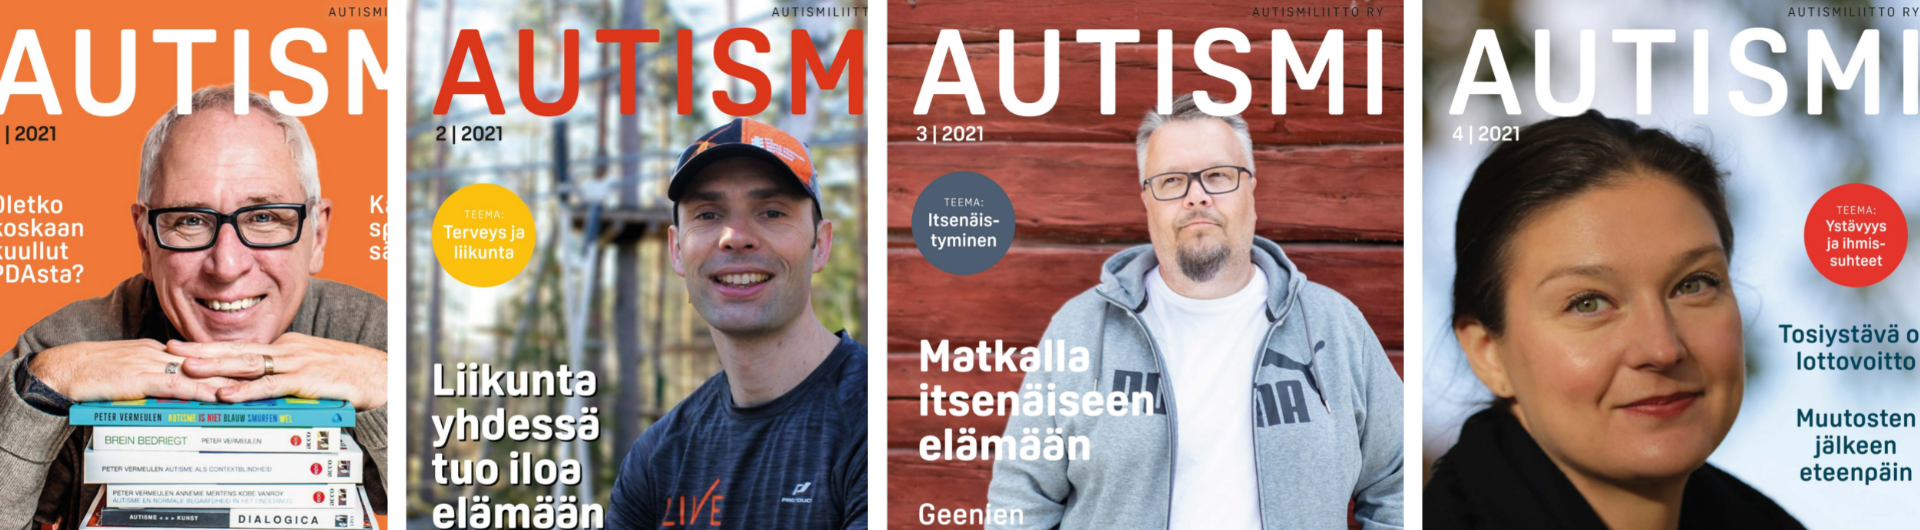 Kuvassa useita eri Autismi-lehtien kansia